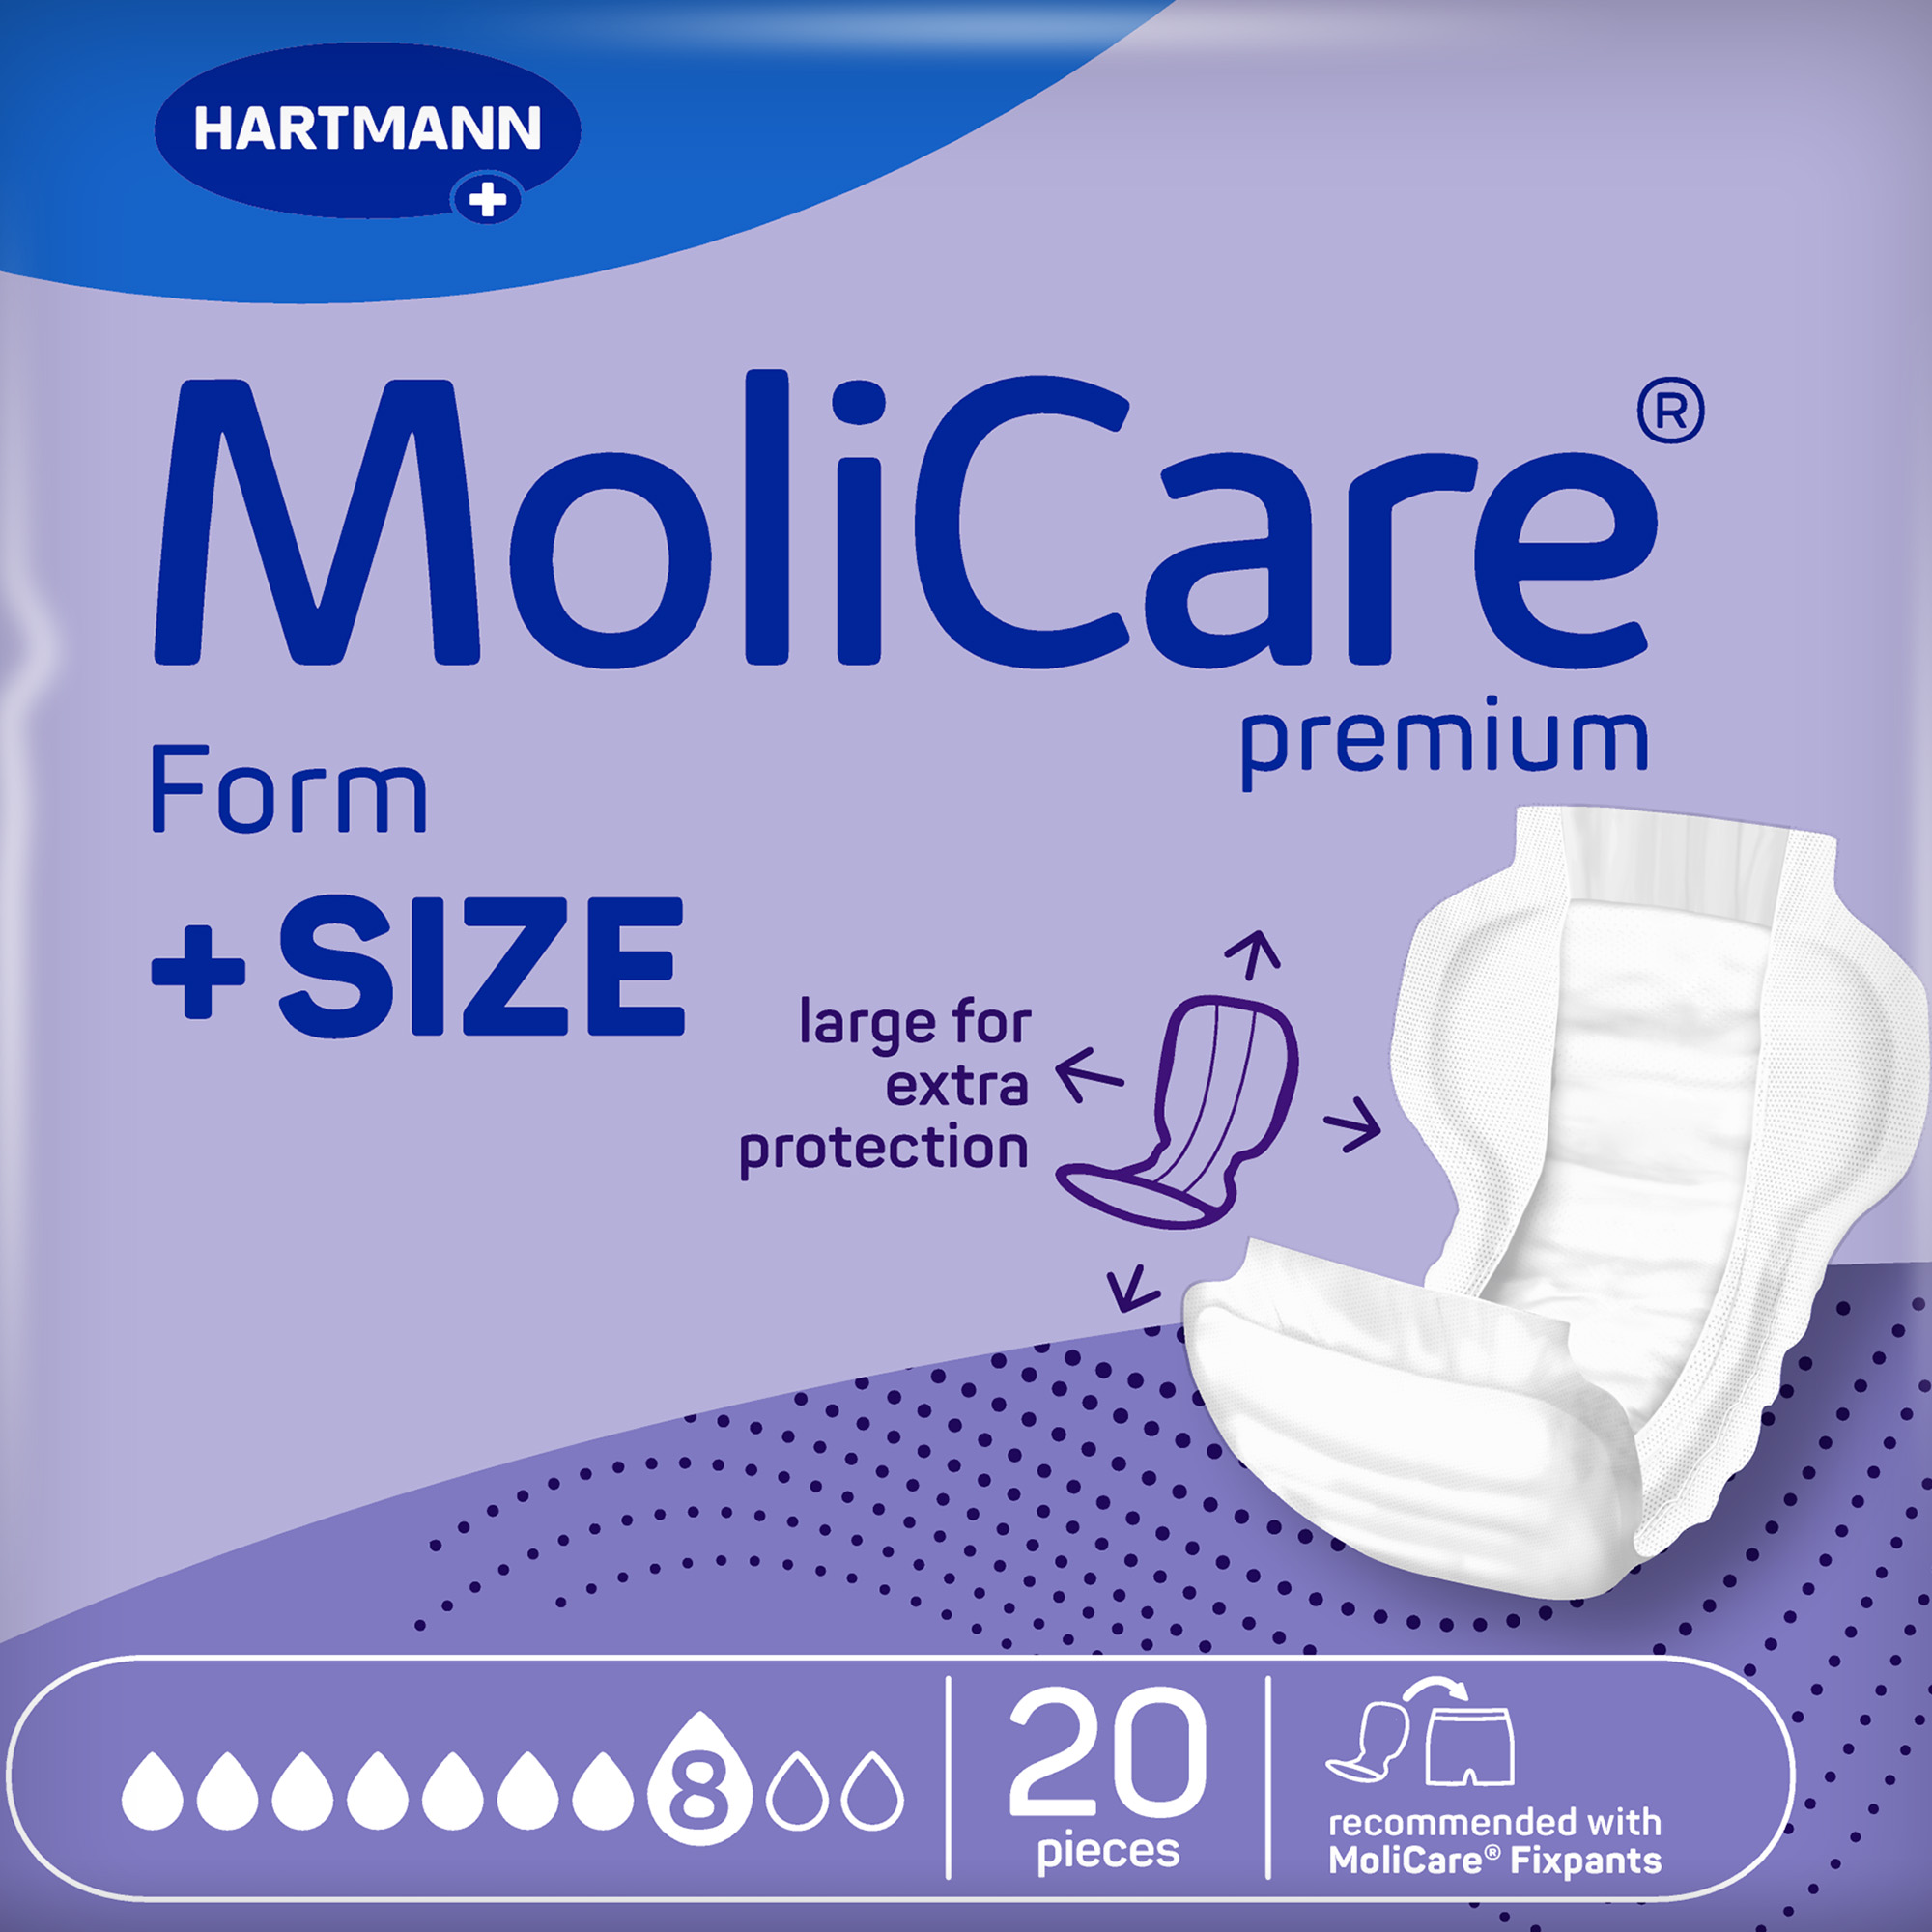 Hartmann MoliCare® Premium Form, +SIZE, 8 drops, violet